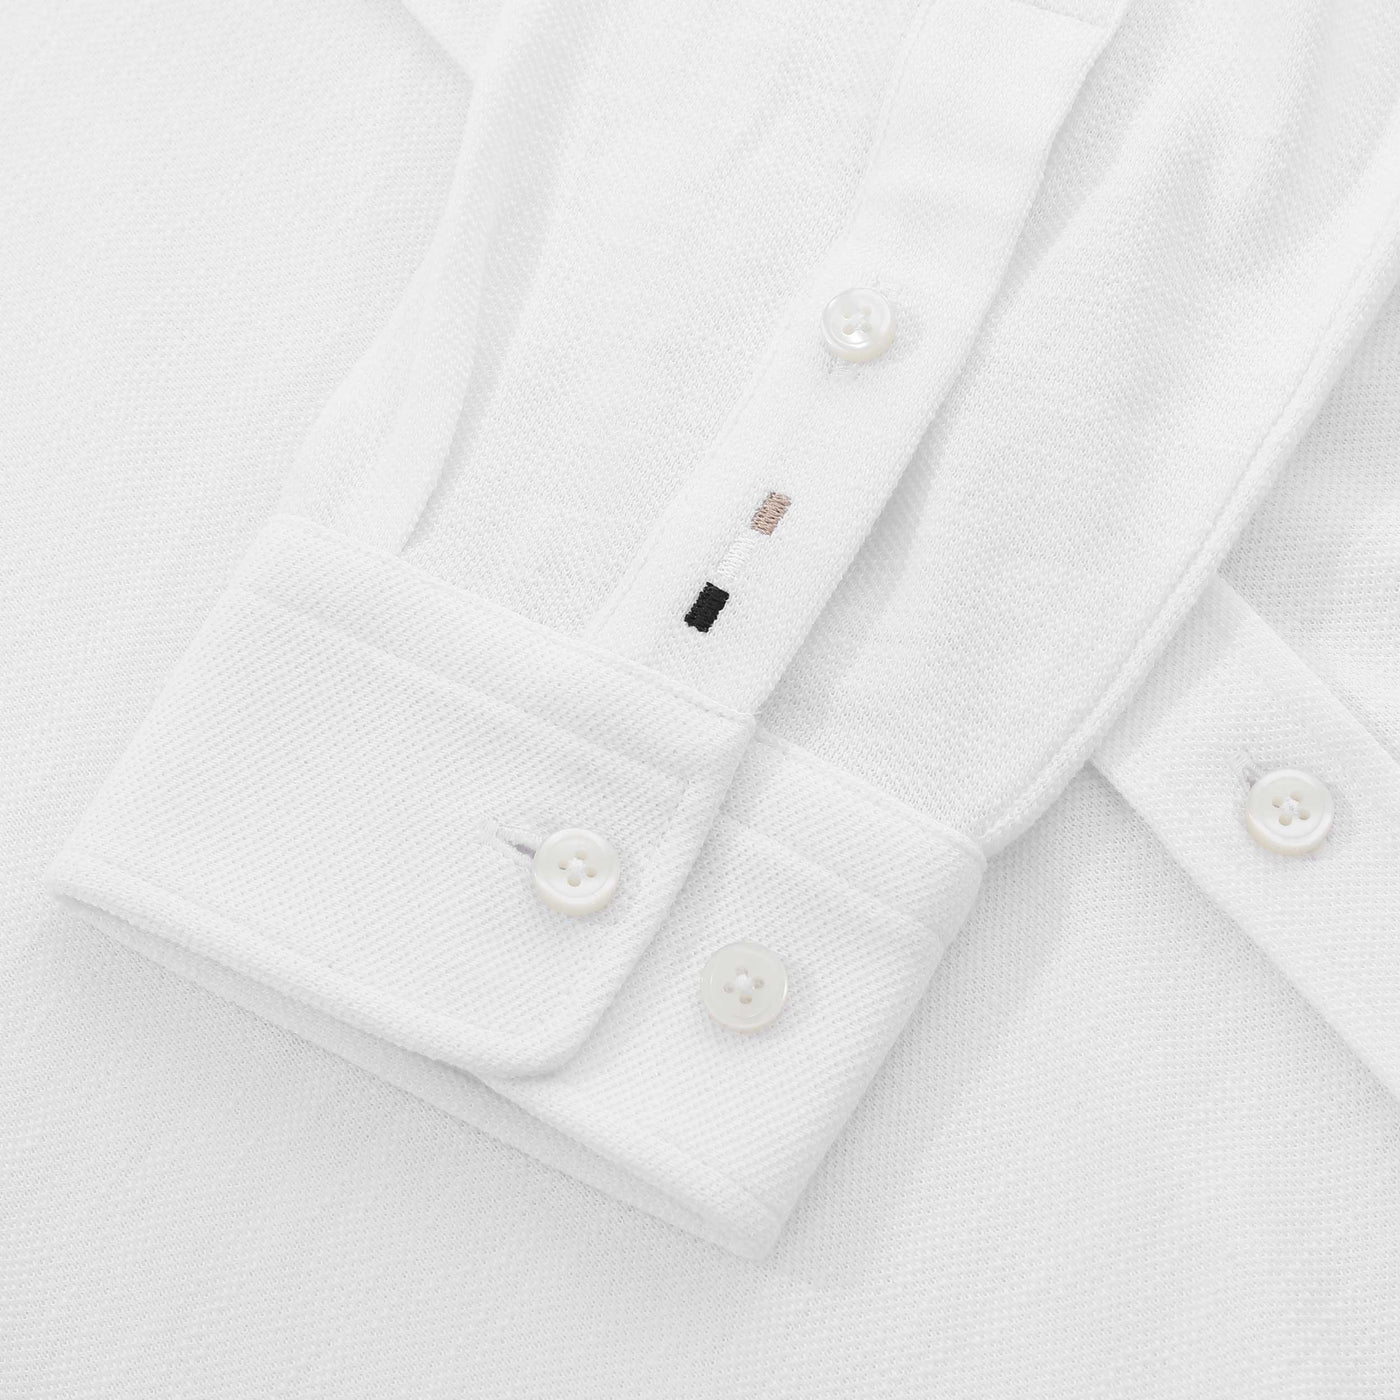 BOSS S Roan Kent SH C1 233 Shirt in White Cuff